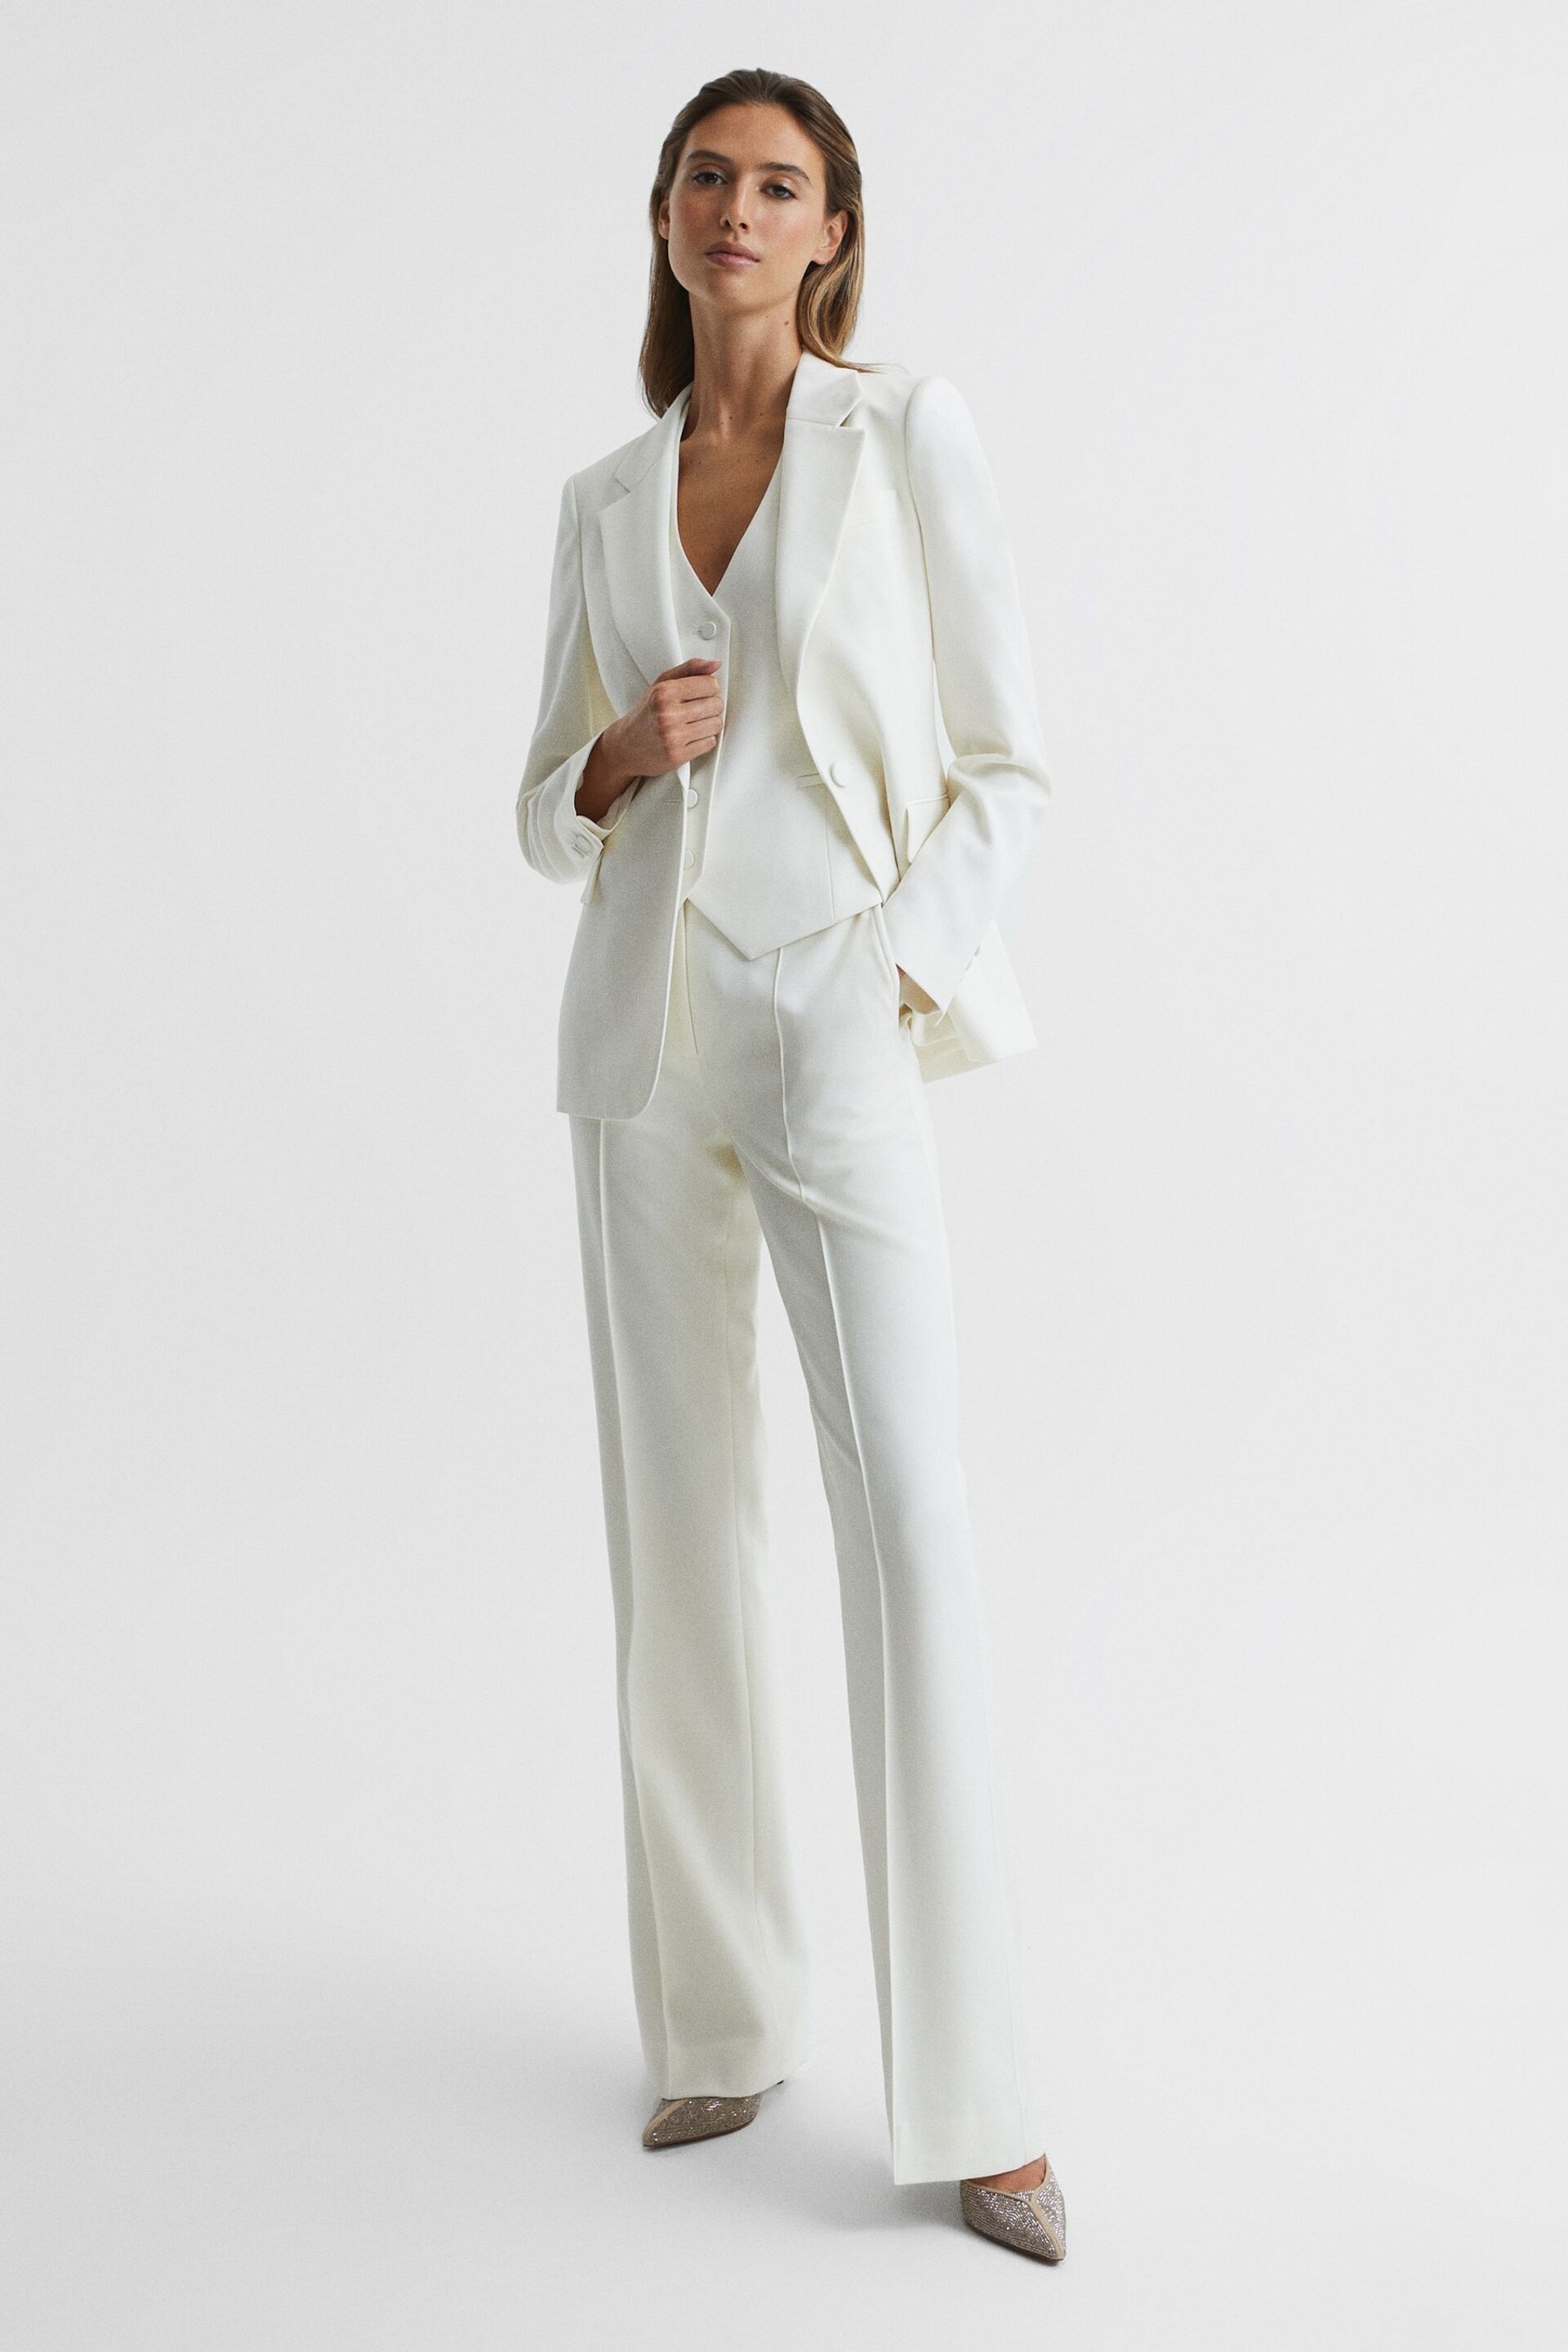 Reiss White Taite Tuxedo Blazer - Image 3 of 7